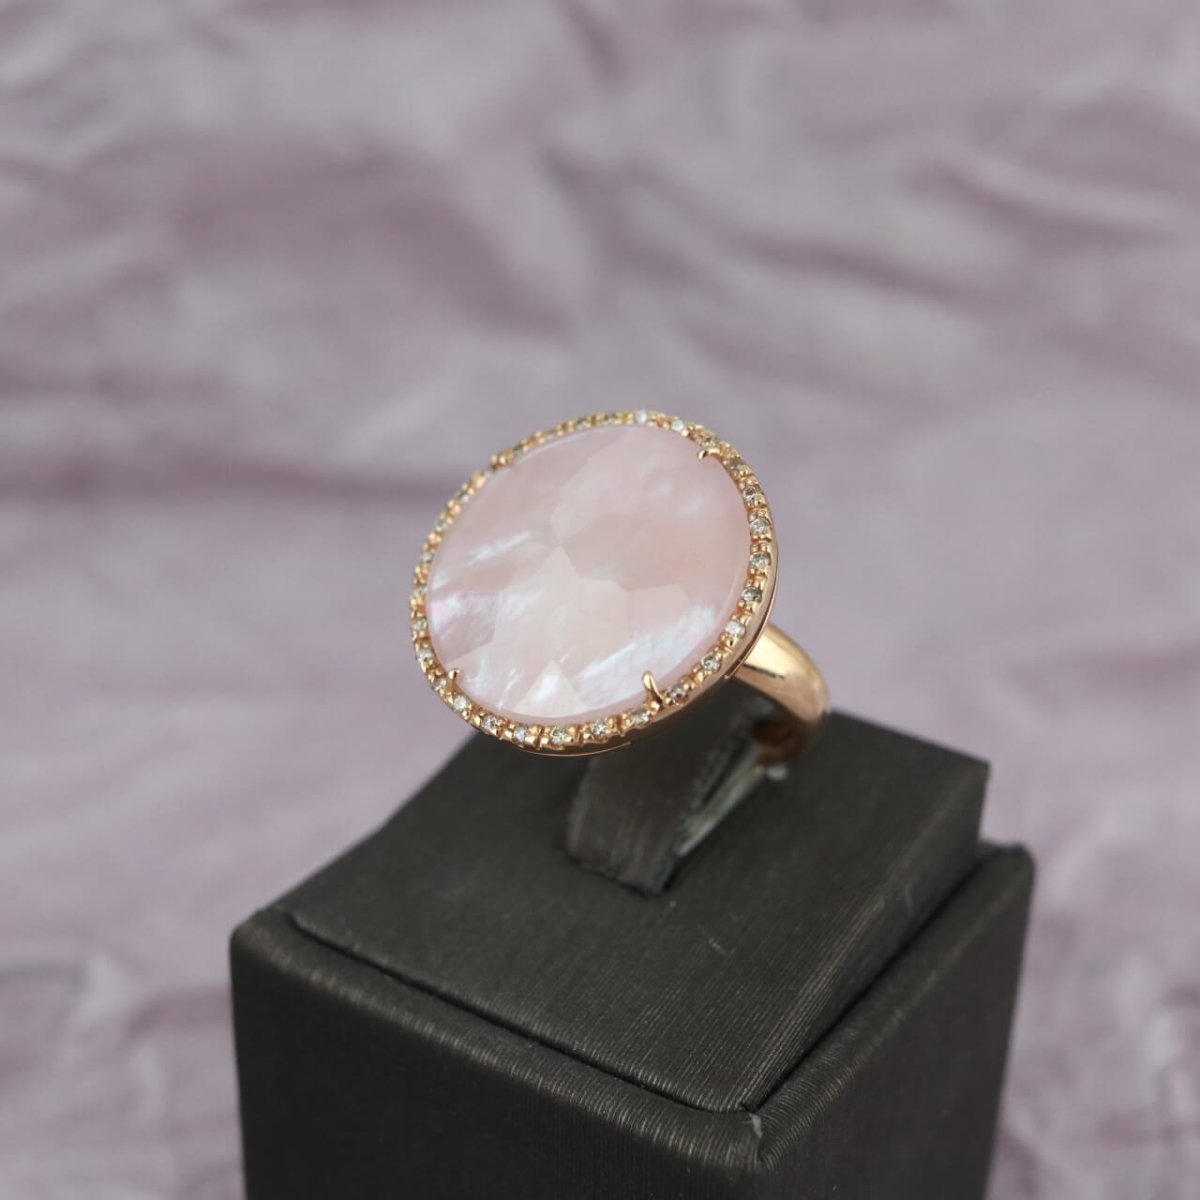 Ring with rose quartz - V. Gasser 1873